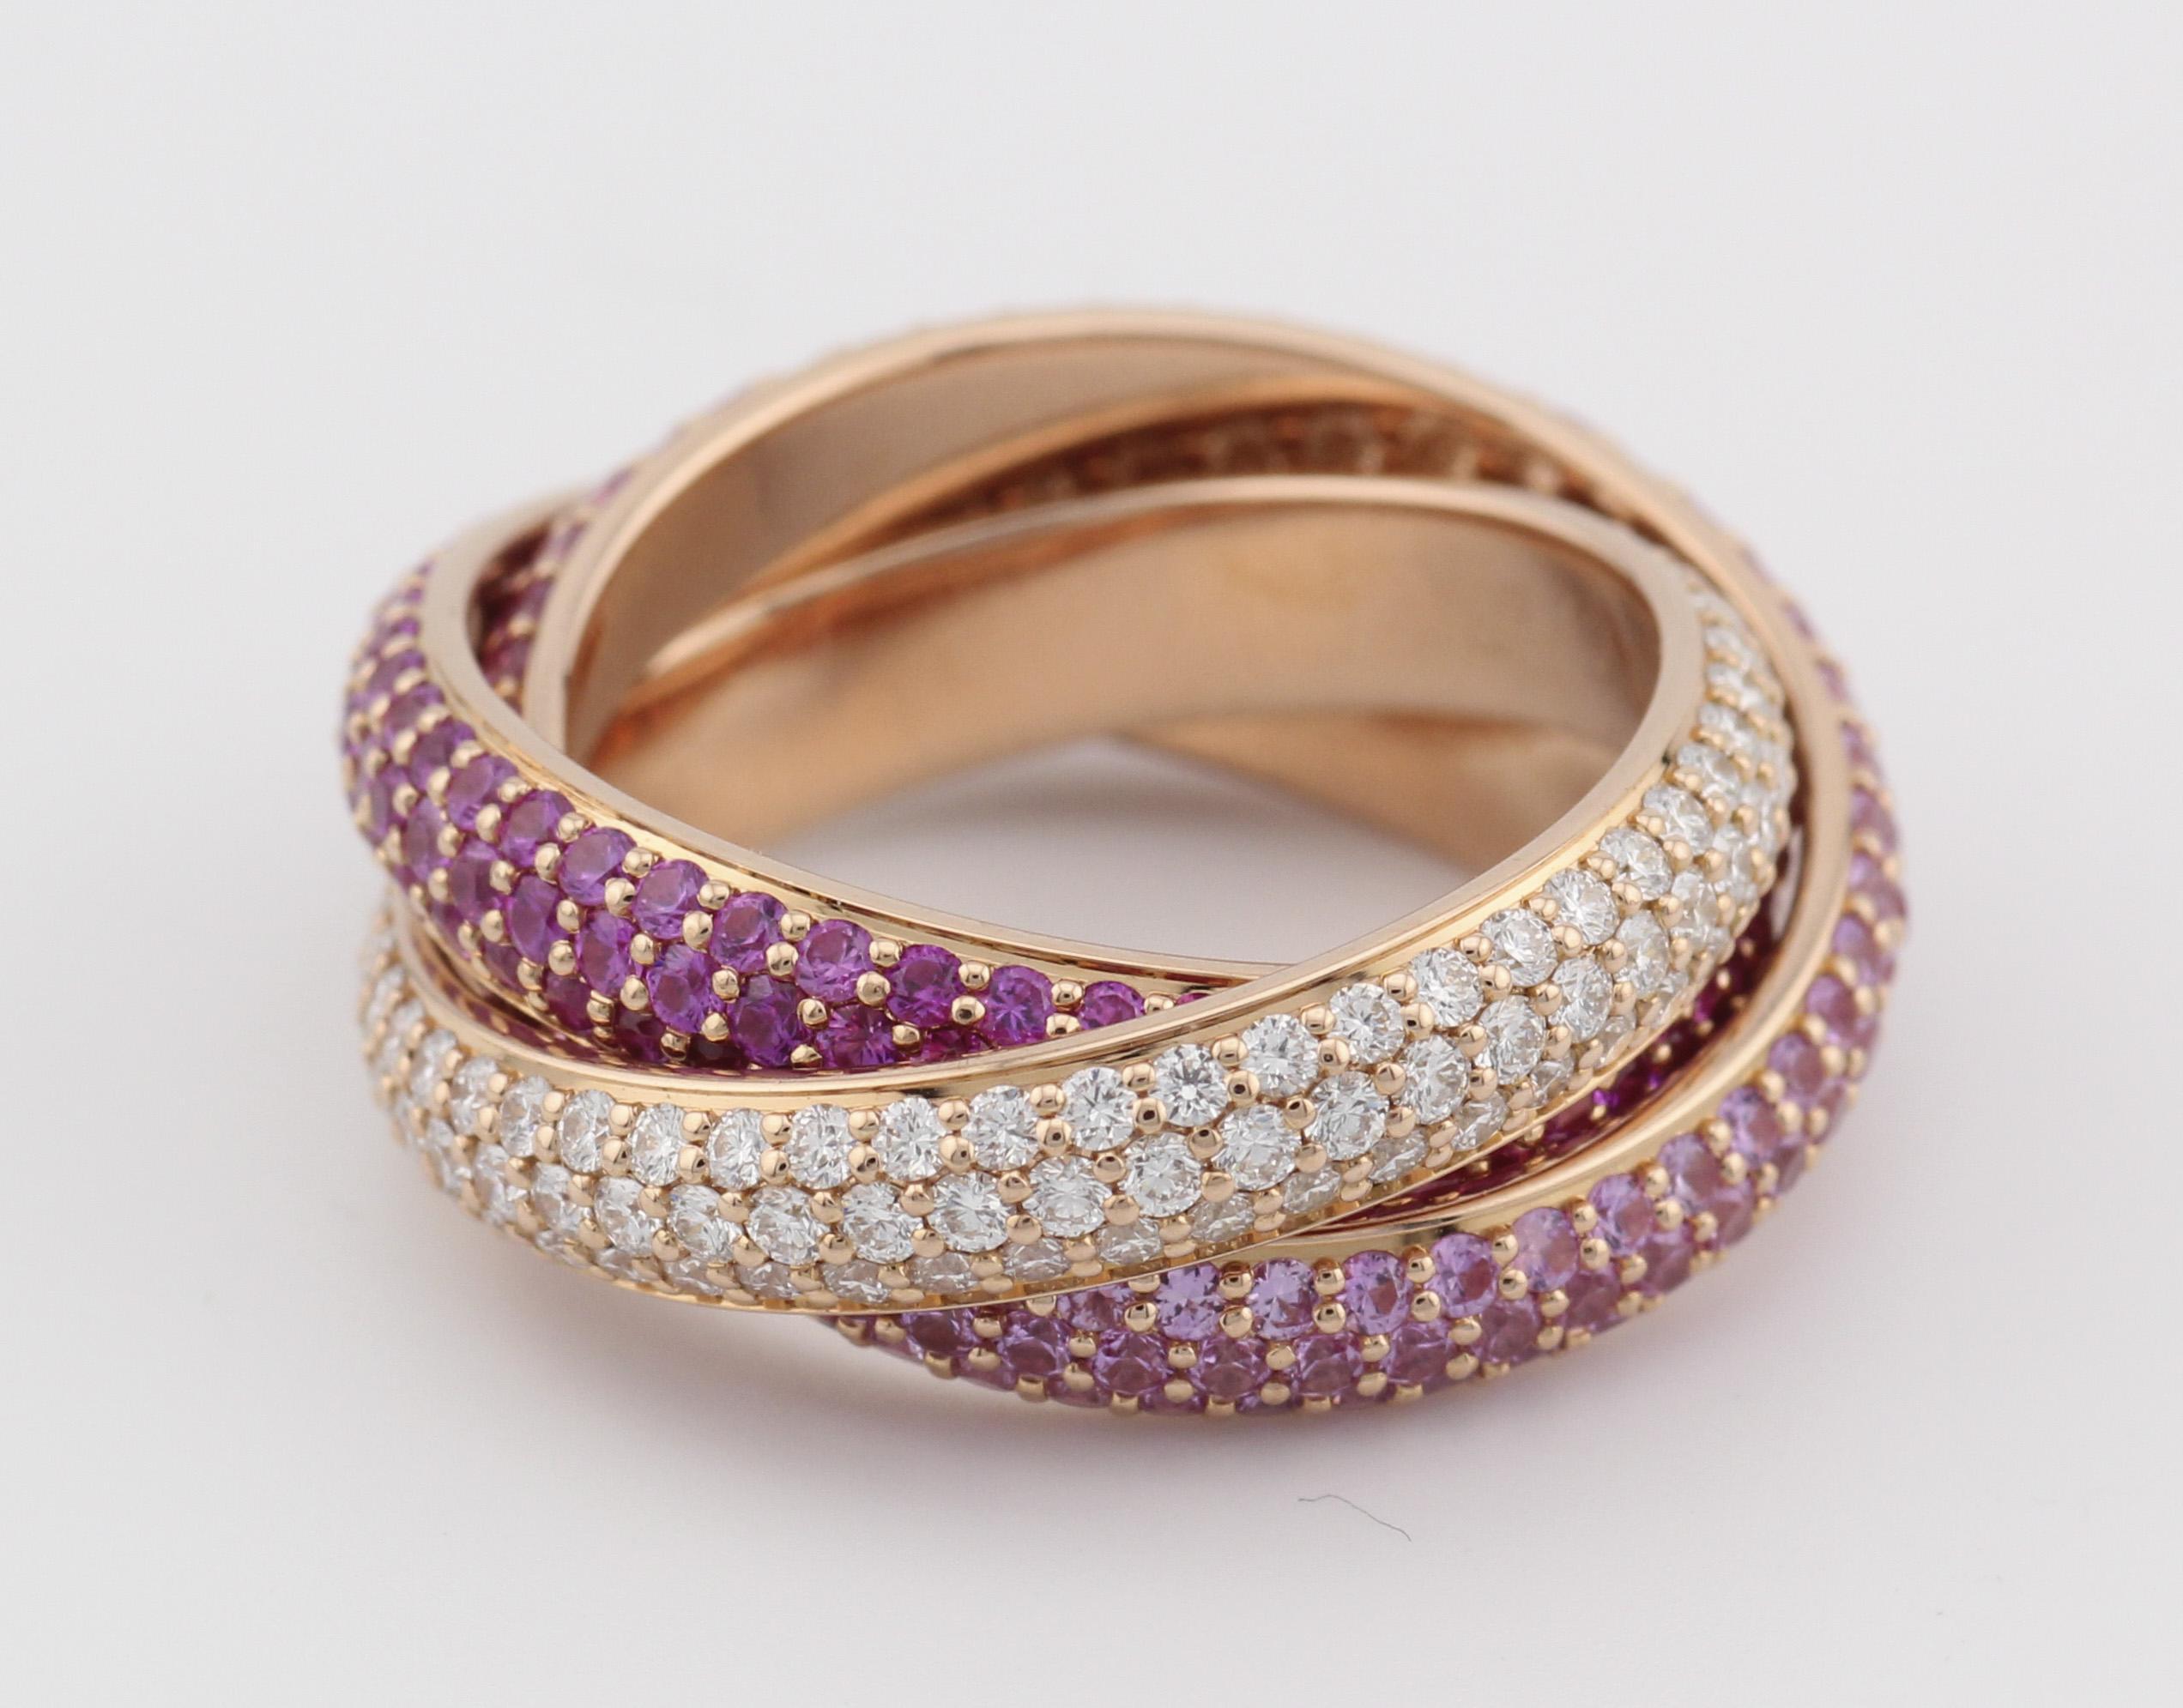 Das Cartier Trinity Pink Sapphire Ruby Diamond 18K Rose Gold Band ist ein exquisites Schmuckstück, das Eleganz und Lebendigkeit nahtlos miteinander verbindet. Dieses von der renommierten Luxusmarke Cartier gefertigte Band ist ein Zeugnis für